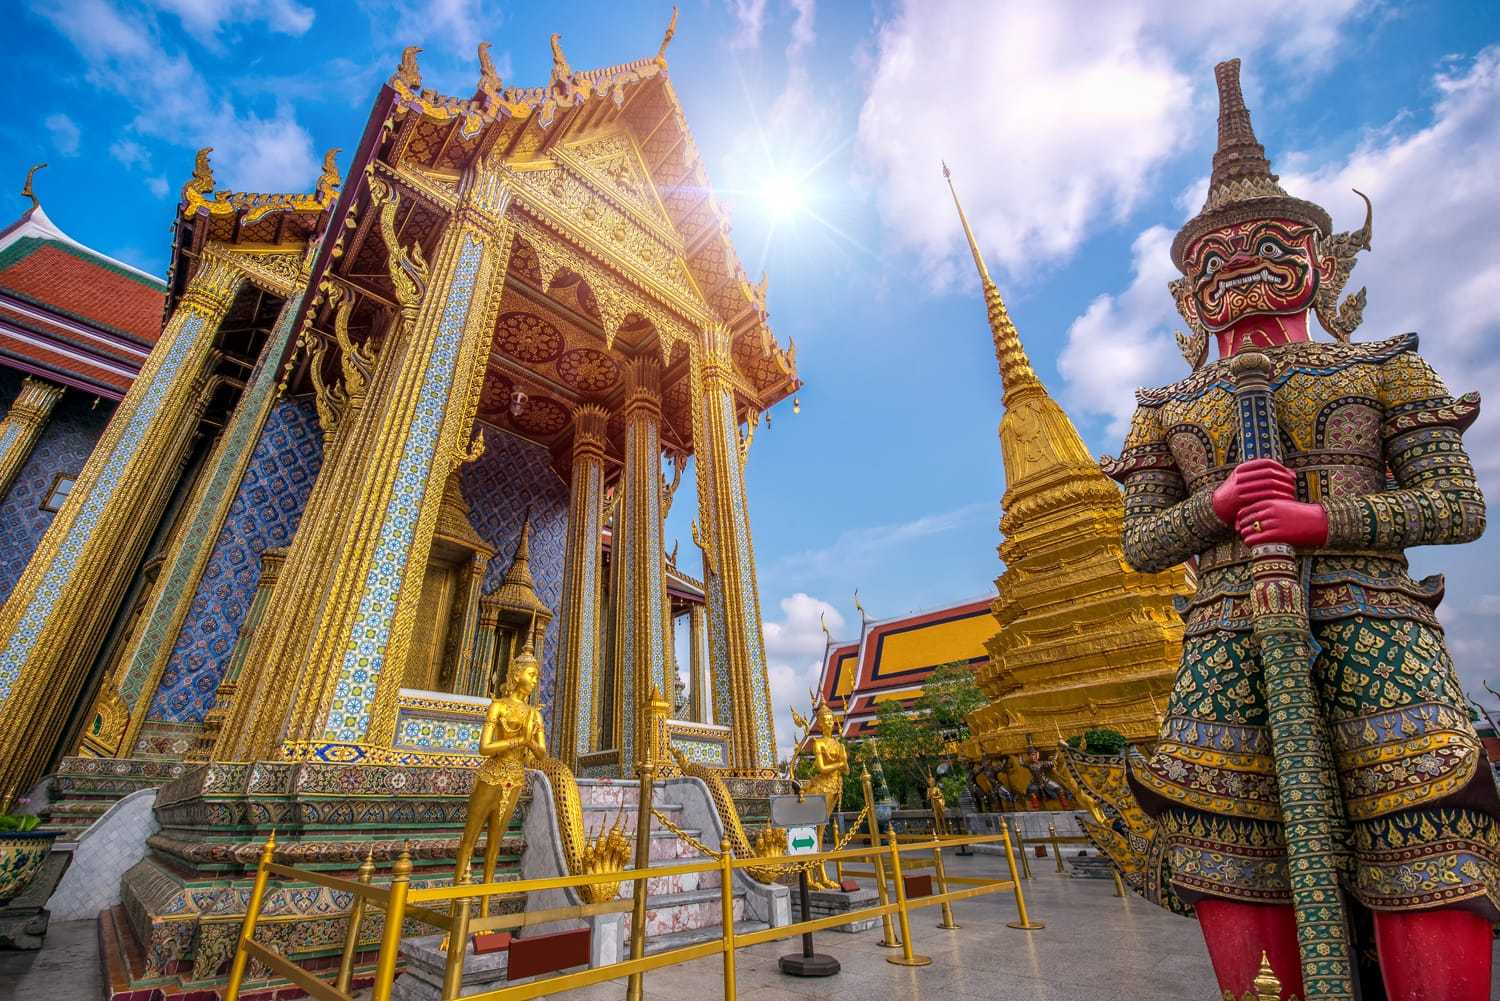 可能是泰国最著名的寺庙,佛寺被认为是神圣的,因为它是用一块玉雕刻